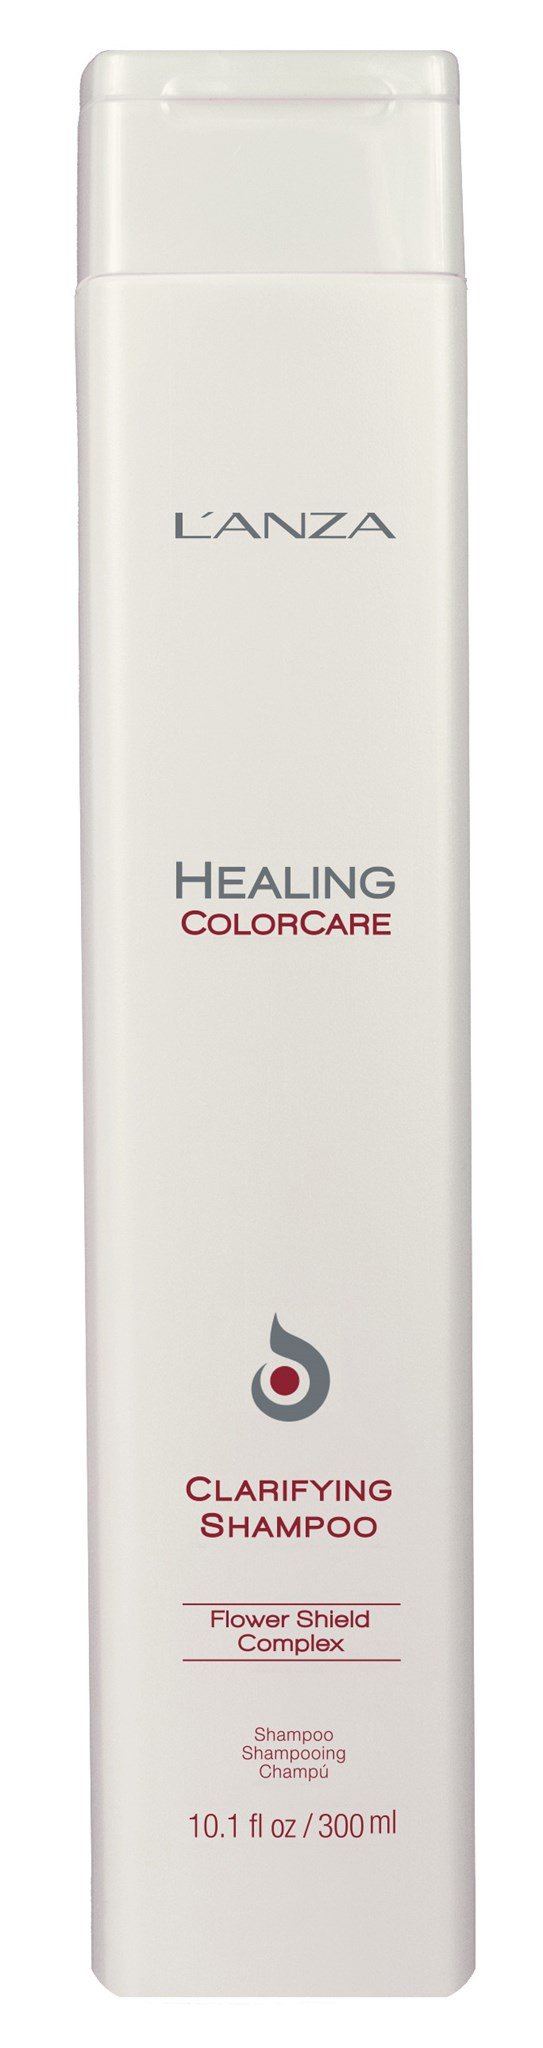 Lanza Healing ColorCare Clarifying Shampoo 300ml